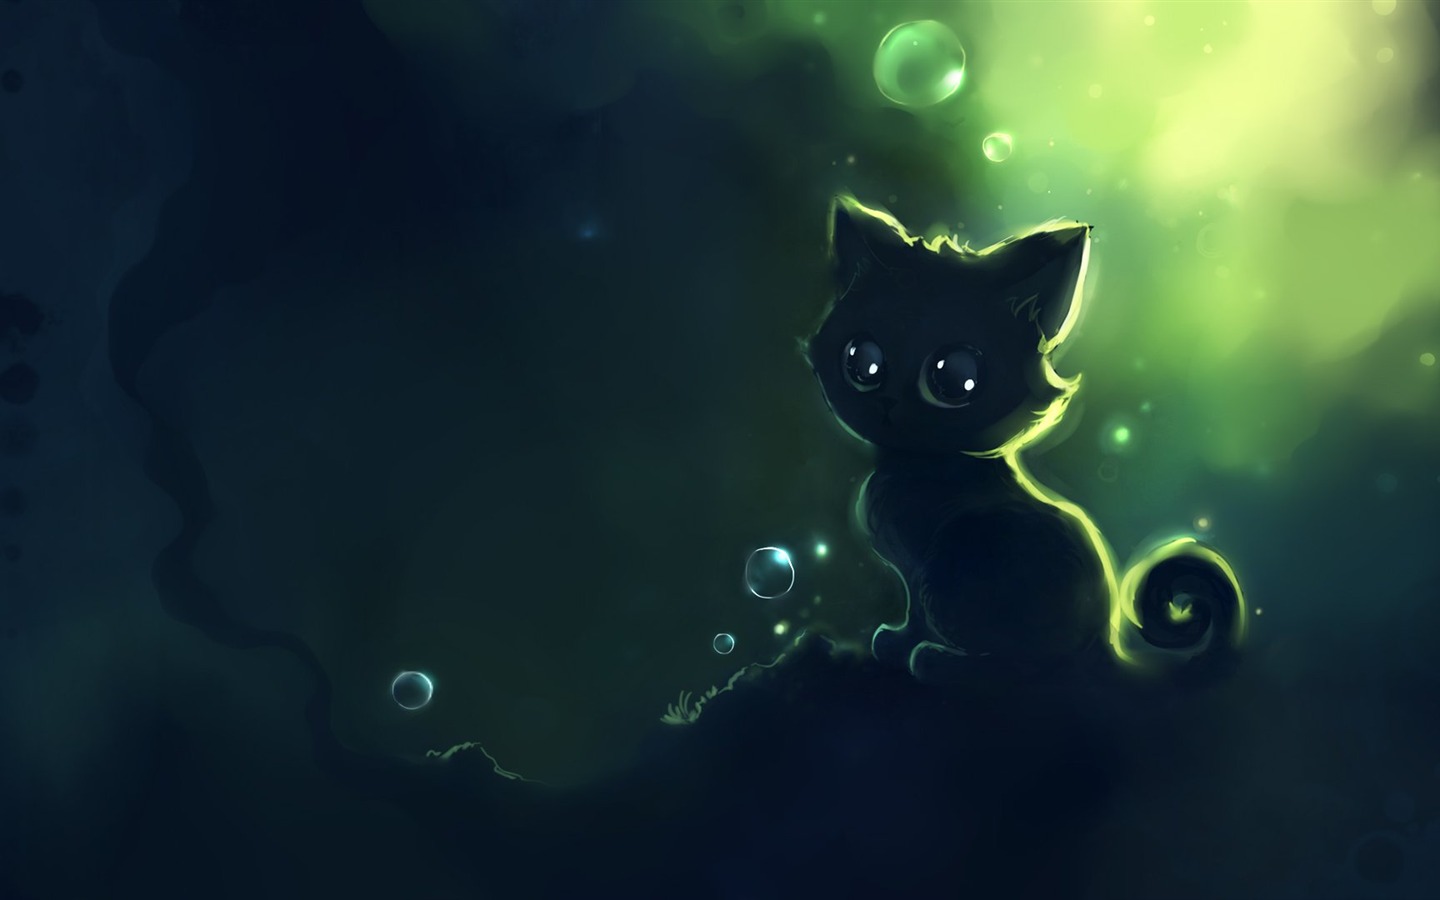 Apofiss pequeño gato negro papel pintado acuarelas #7 - 1440x900